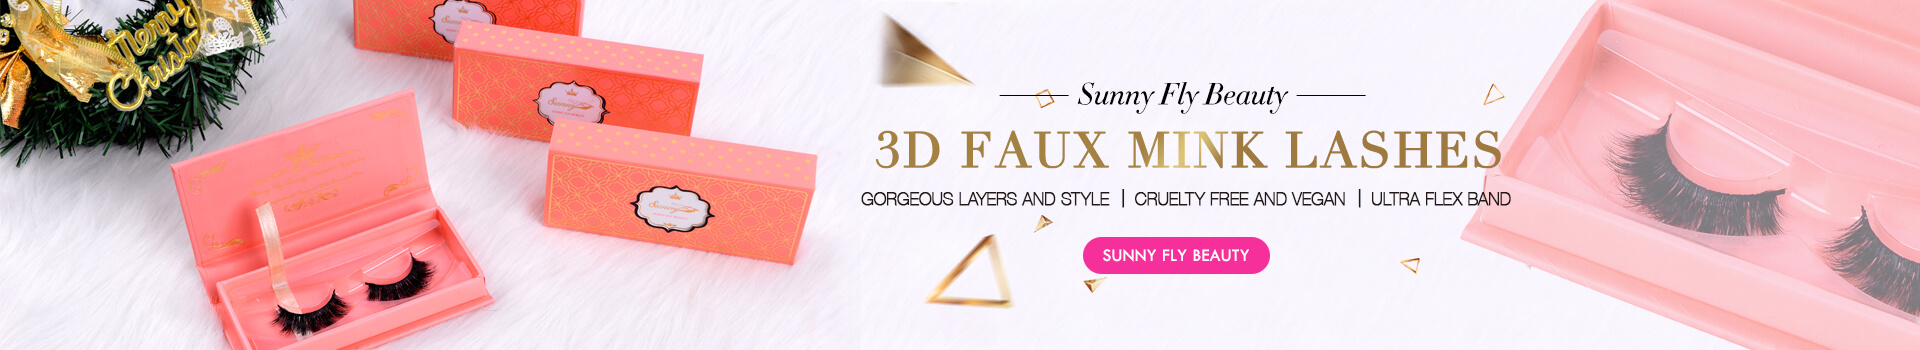 3D Faux Mink Lashes SD24